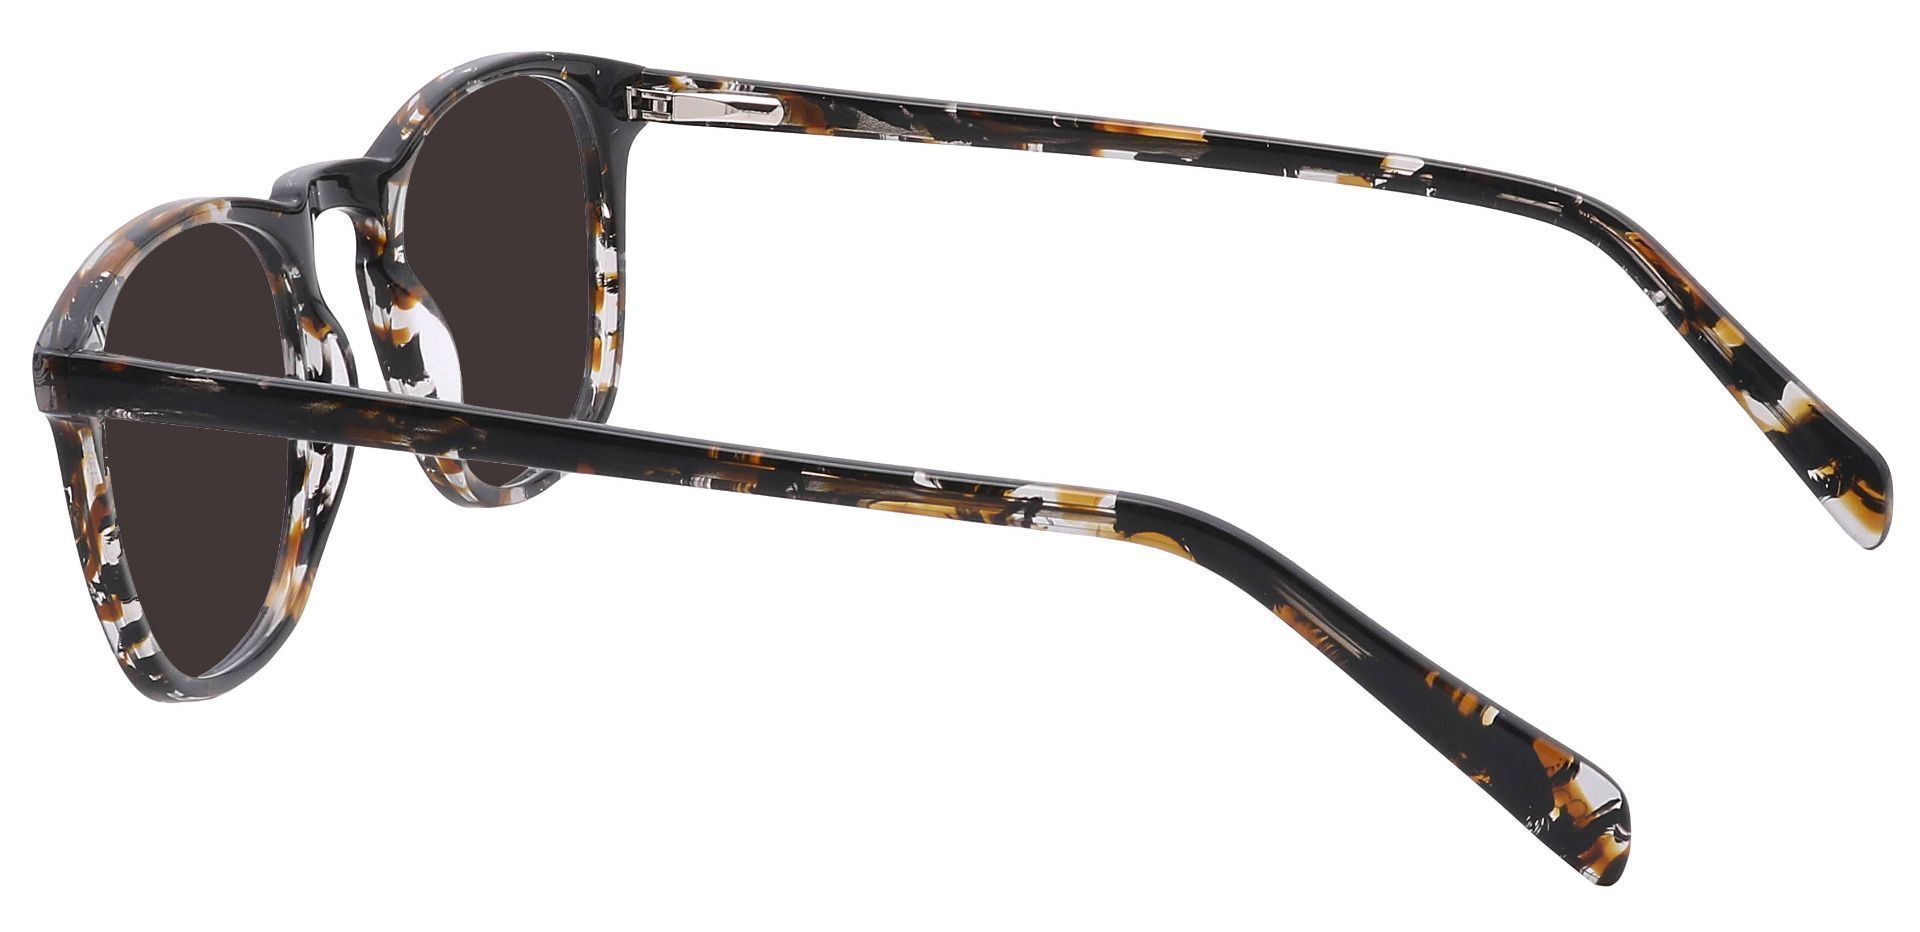 Venti Square Progressive Sunglasses - Black Frame With Gray Lenses